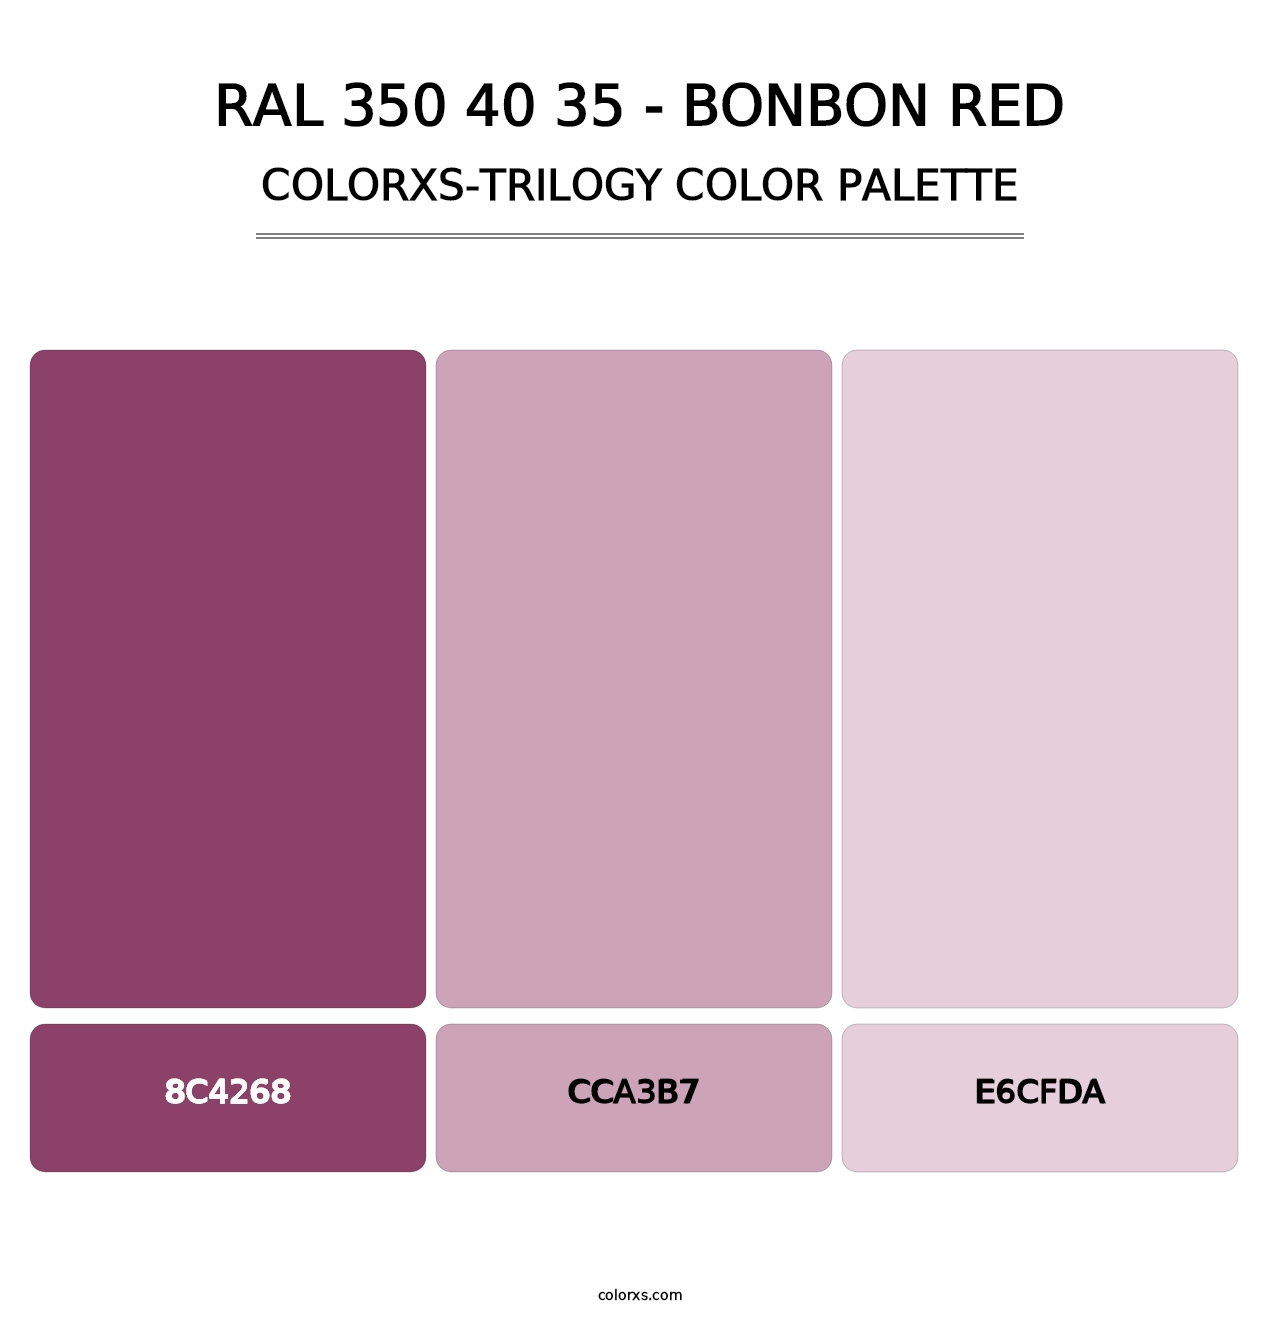 RAL 350 40 35 - Bonbon Red - Colorxs Trilogy Palette